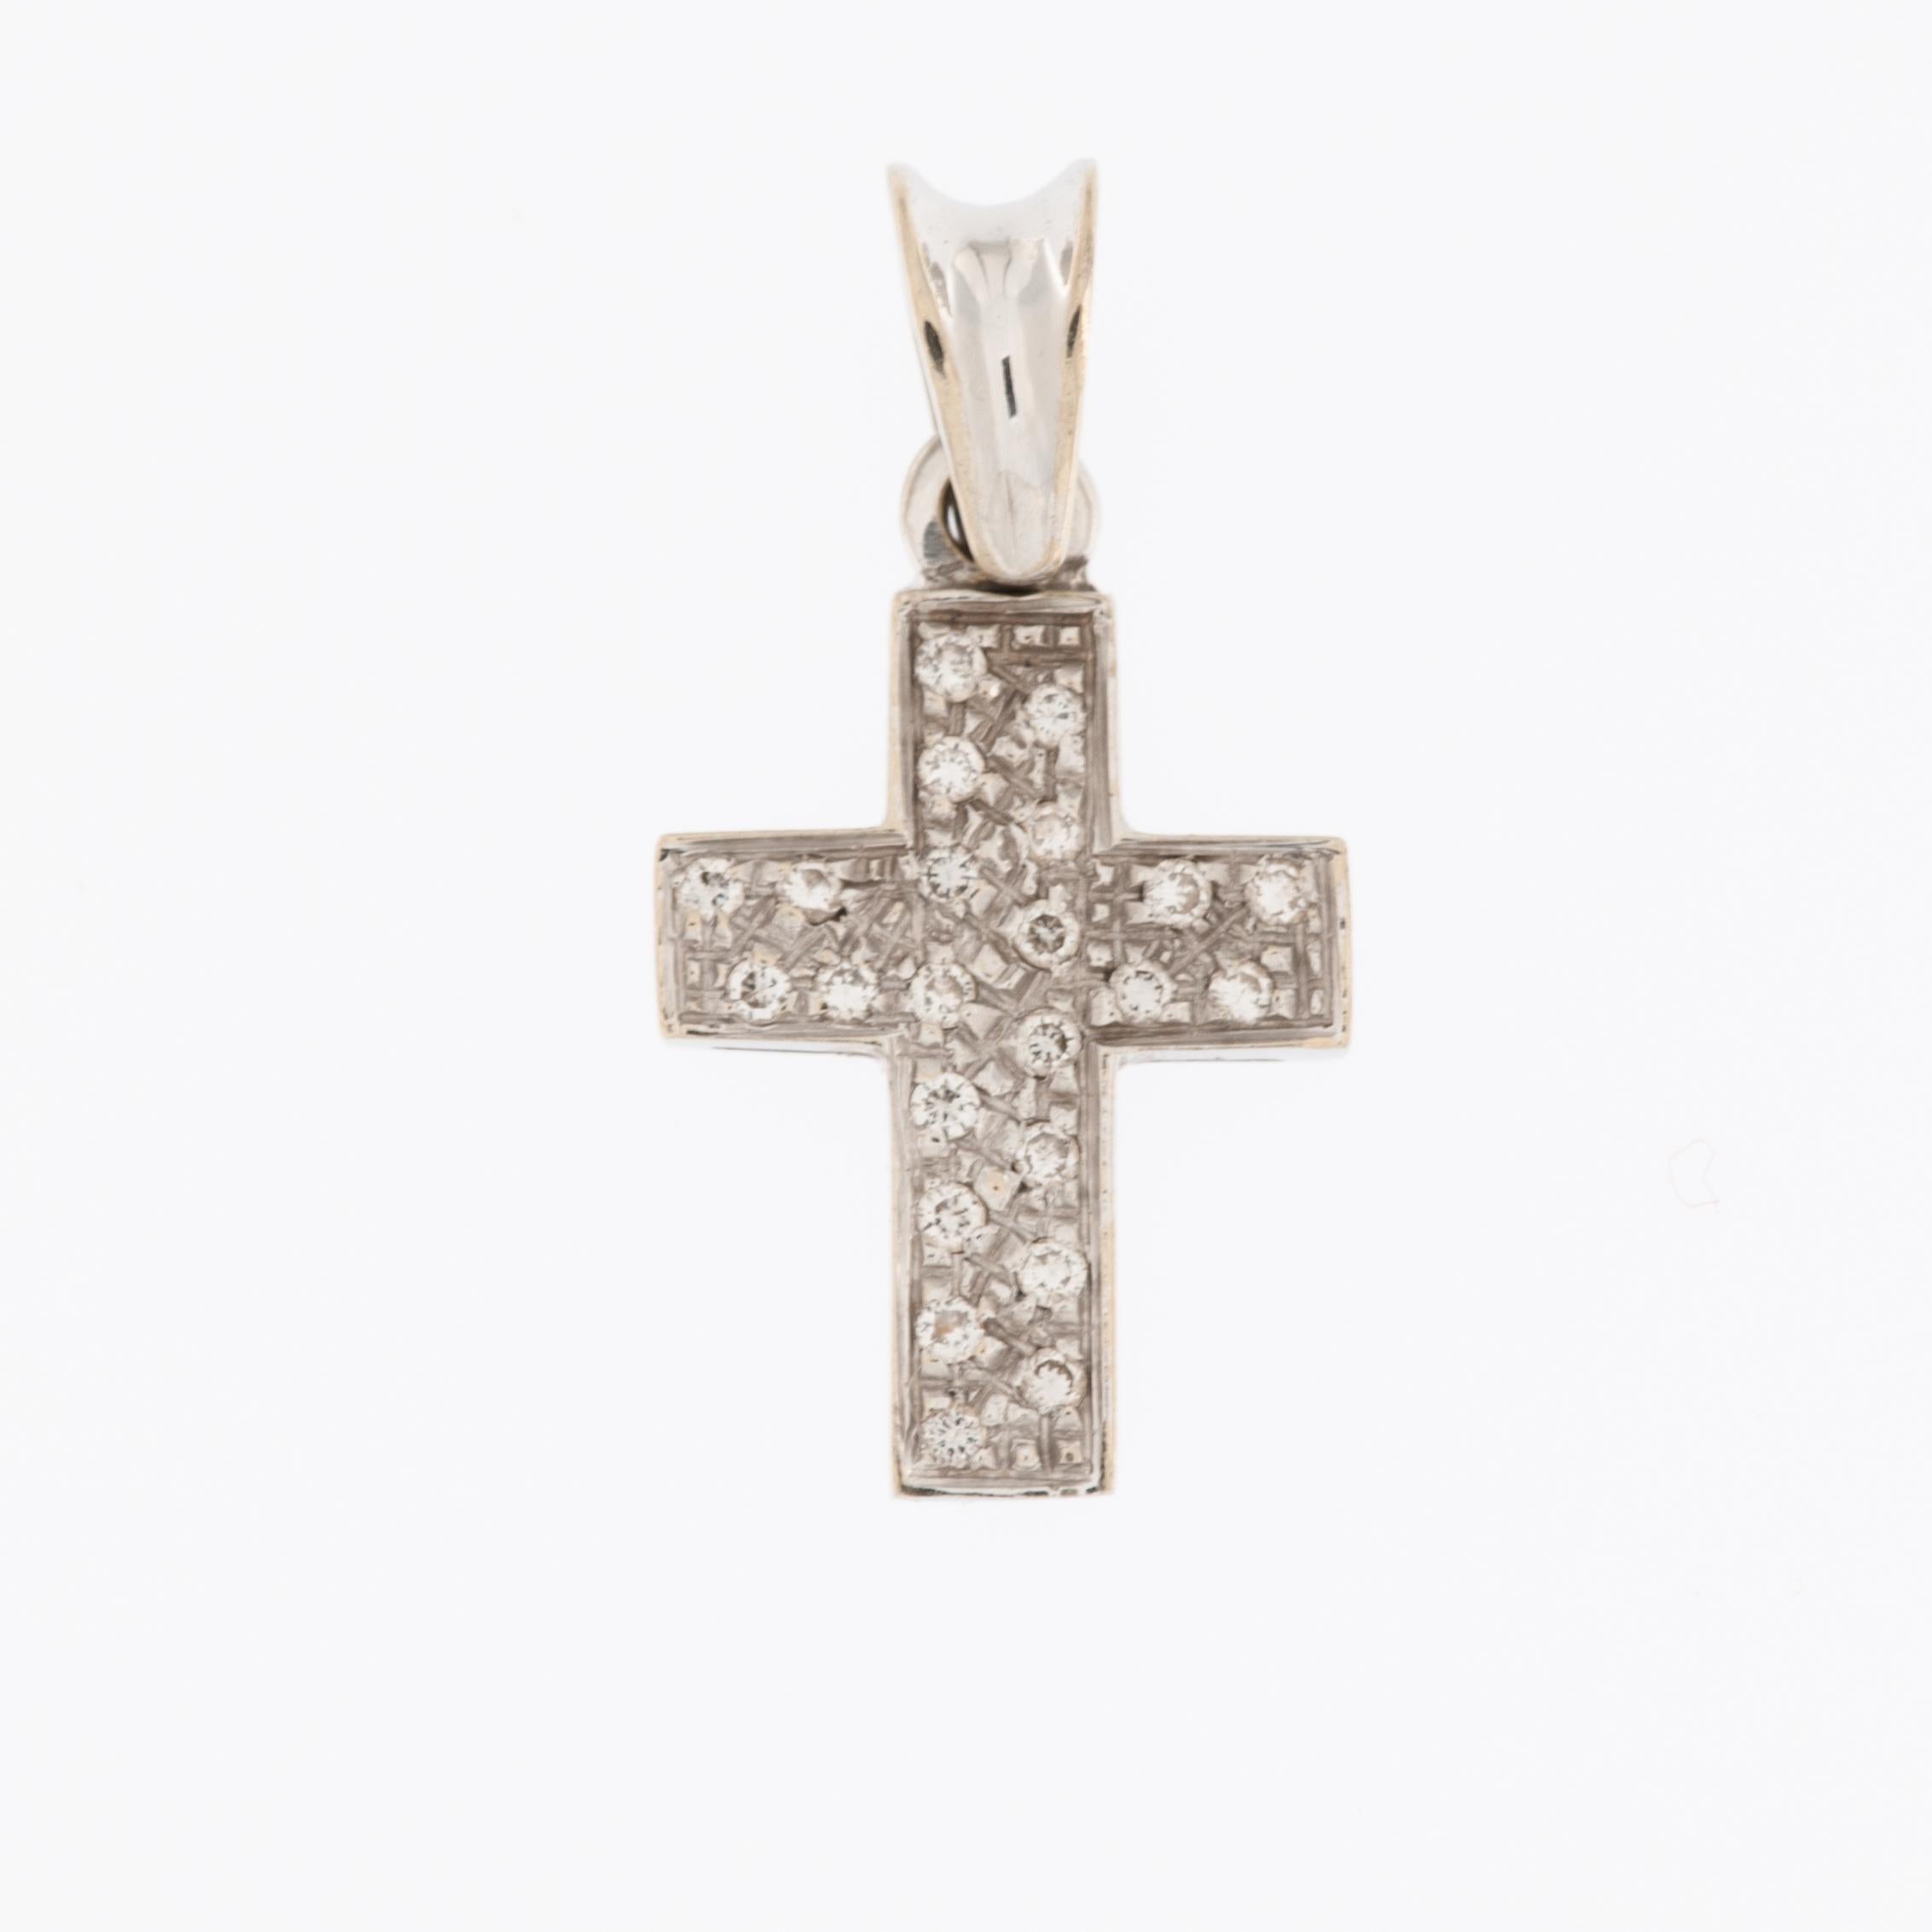 La croix vintage italienne en or blanc 18kt avec diamants est un bijou magnifique et intemporel qui présente plusieurs caractéristiques distinctives.

Vintage indique que la croix n'est pas une création moderne mais plutôt un bijou plus ancien qui